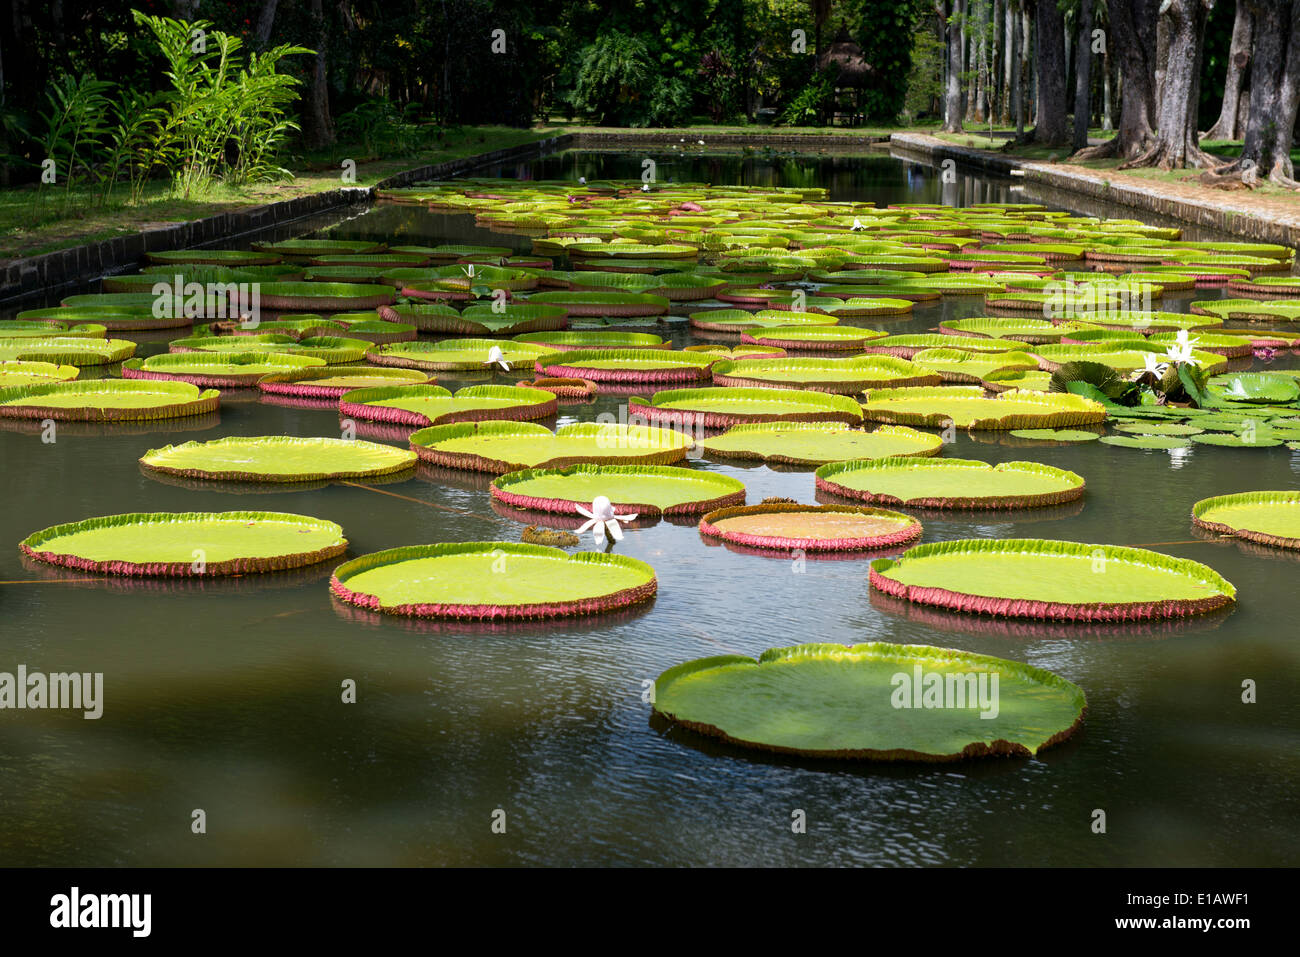 Le Lotus (Nelumbo nucifera) réservoir à la Seewoosagur Ramgoolam, le Jardin botanique royal, de pamplemousses Ile Maurice Banque D'Images